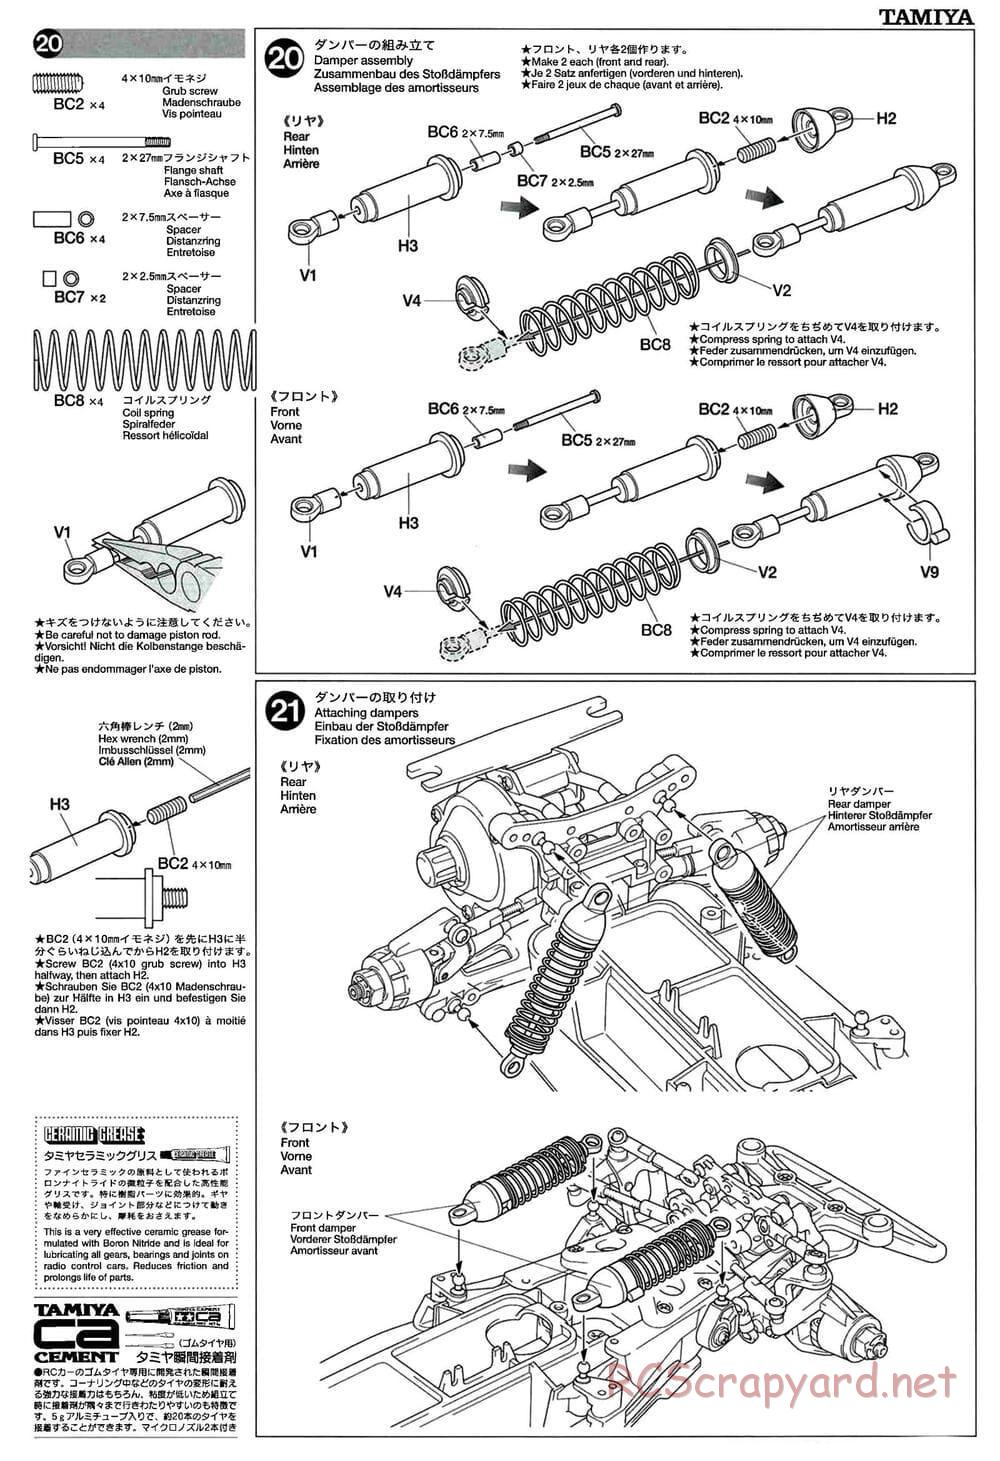 Tamiya - GT-01 Chassis - Manual - Page 13